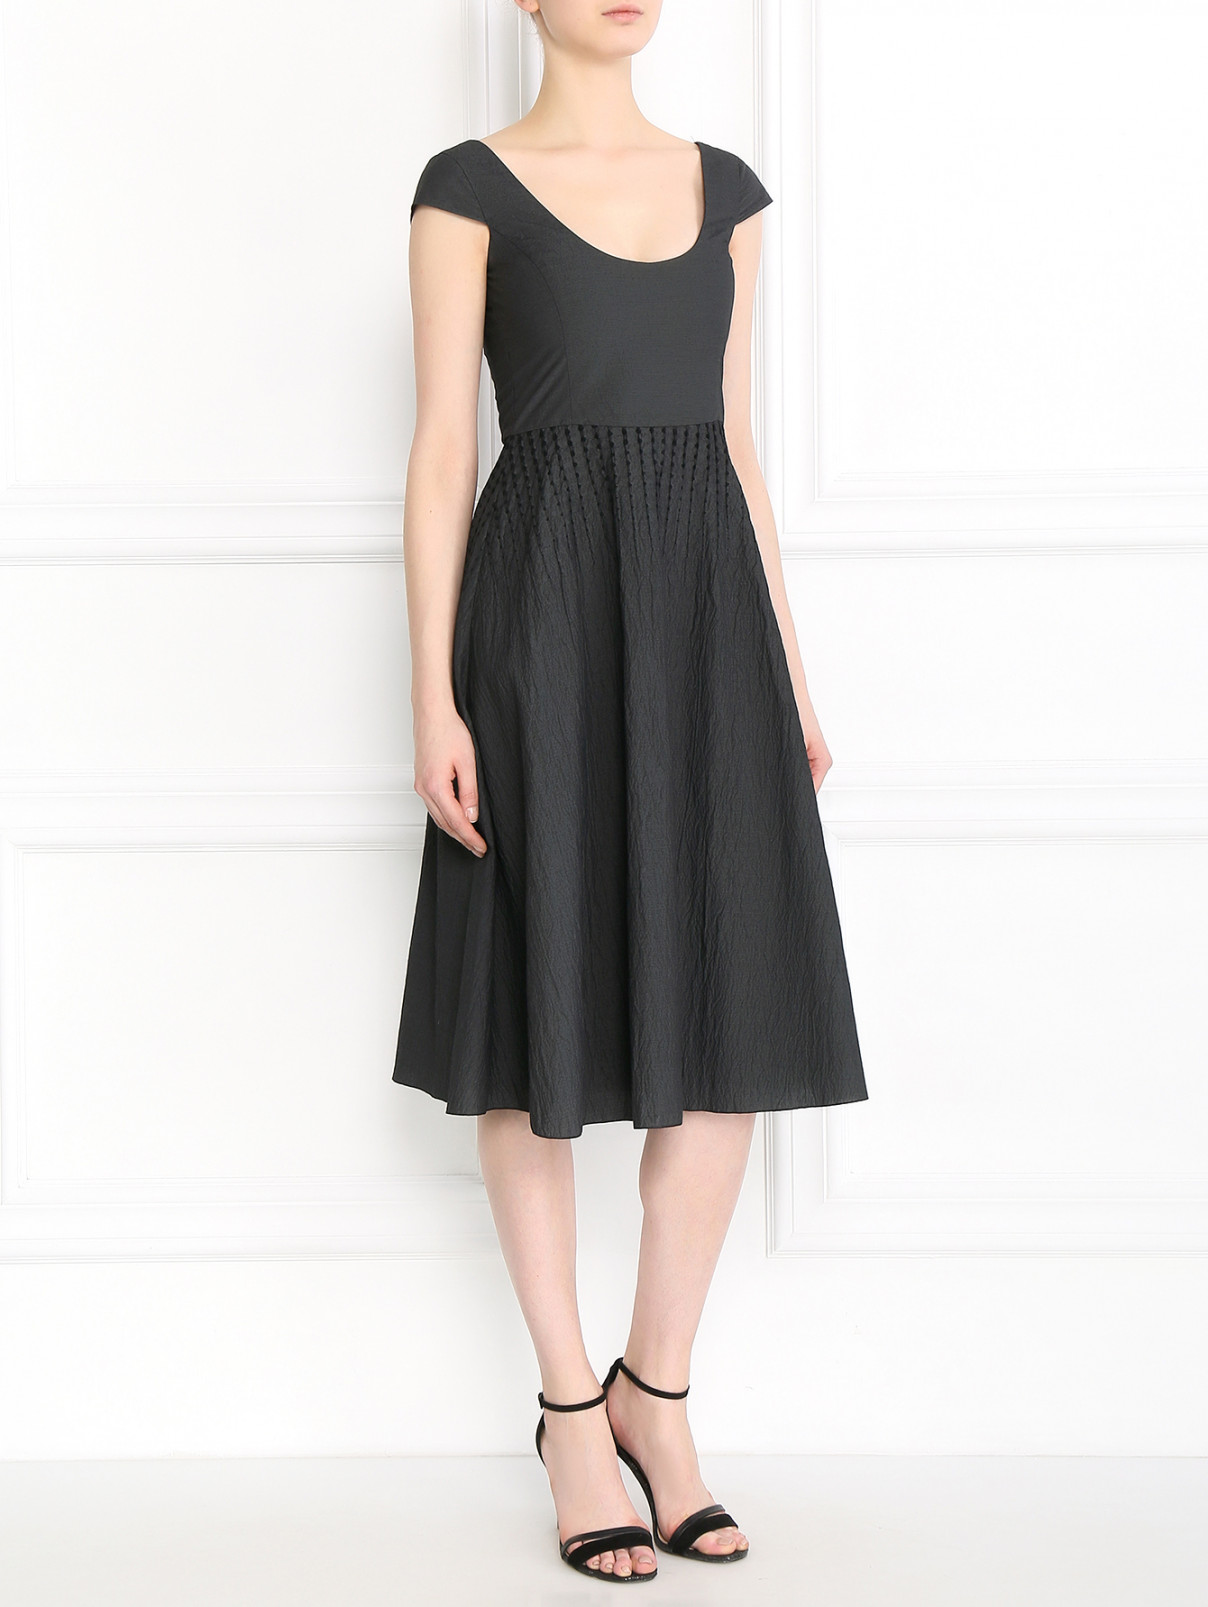 Платье-миди из хлопка Emporio Armani  –  Модель Общий вид  – Цвет:  Серый